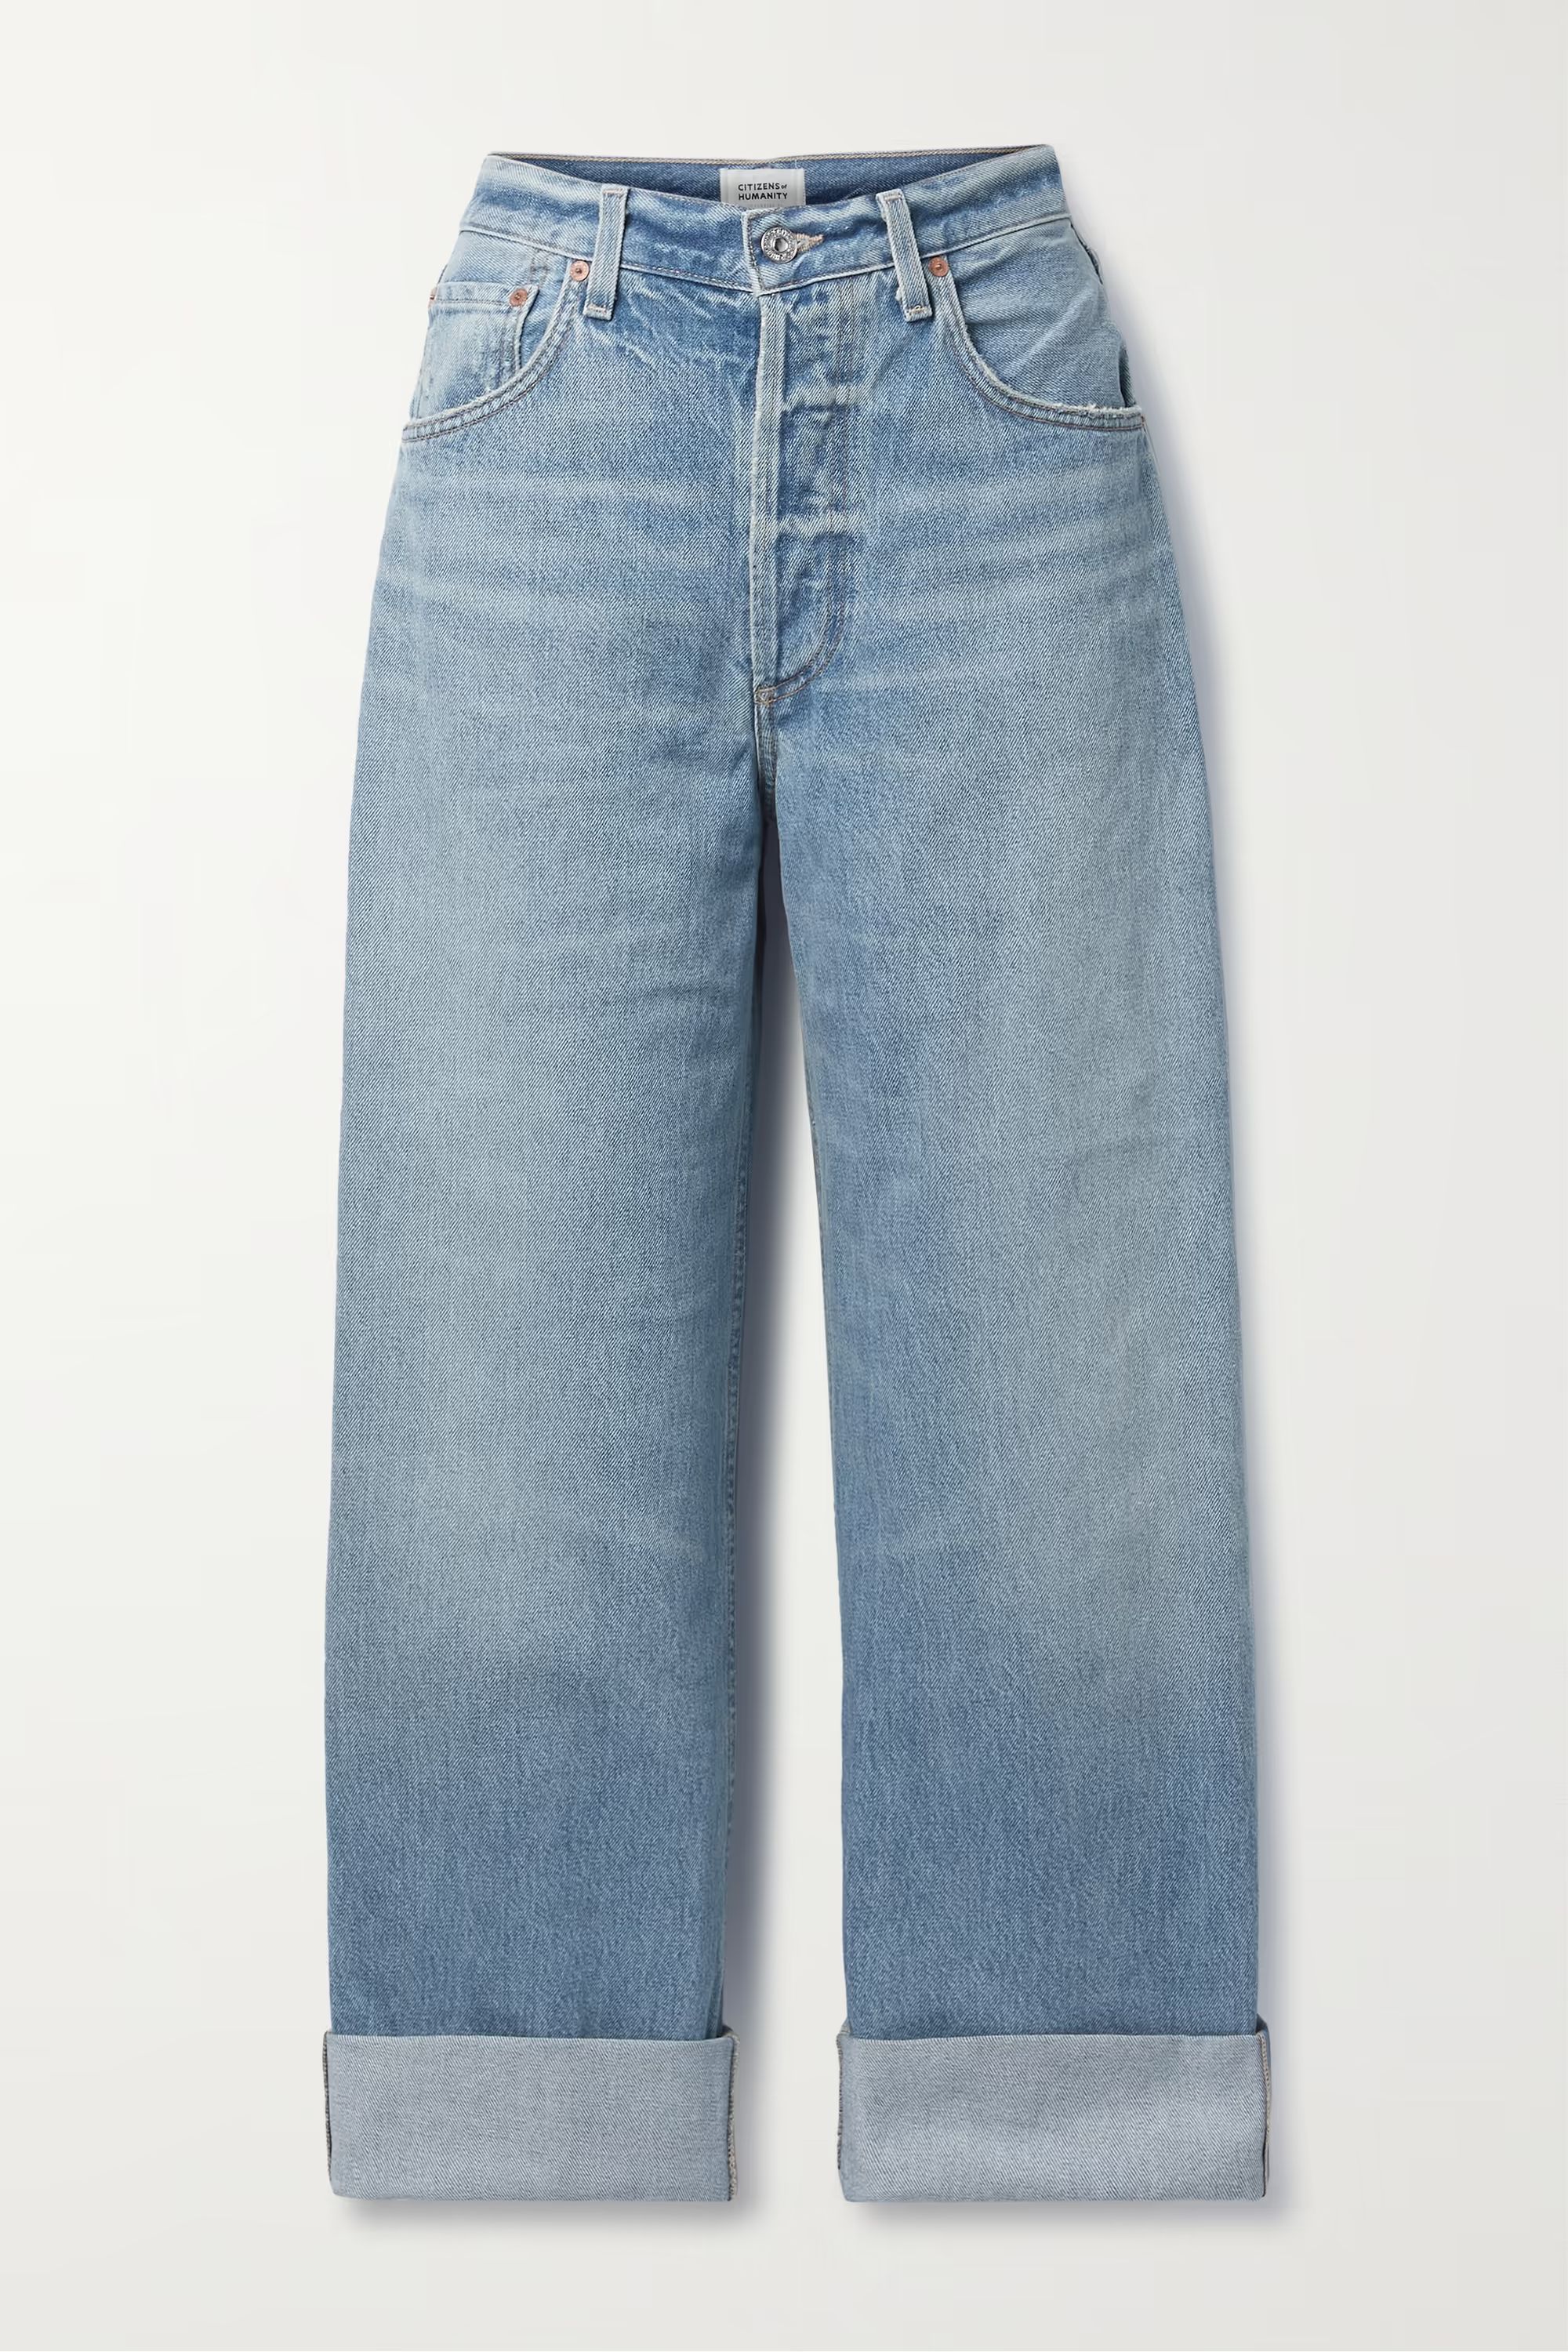 + NET SUSTAIN Ayla high-rise wide-leg organic jeans | NET-A-PORTER (US)